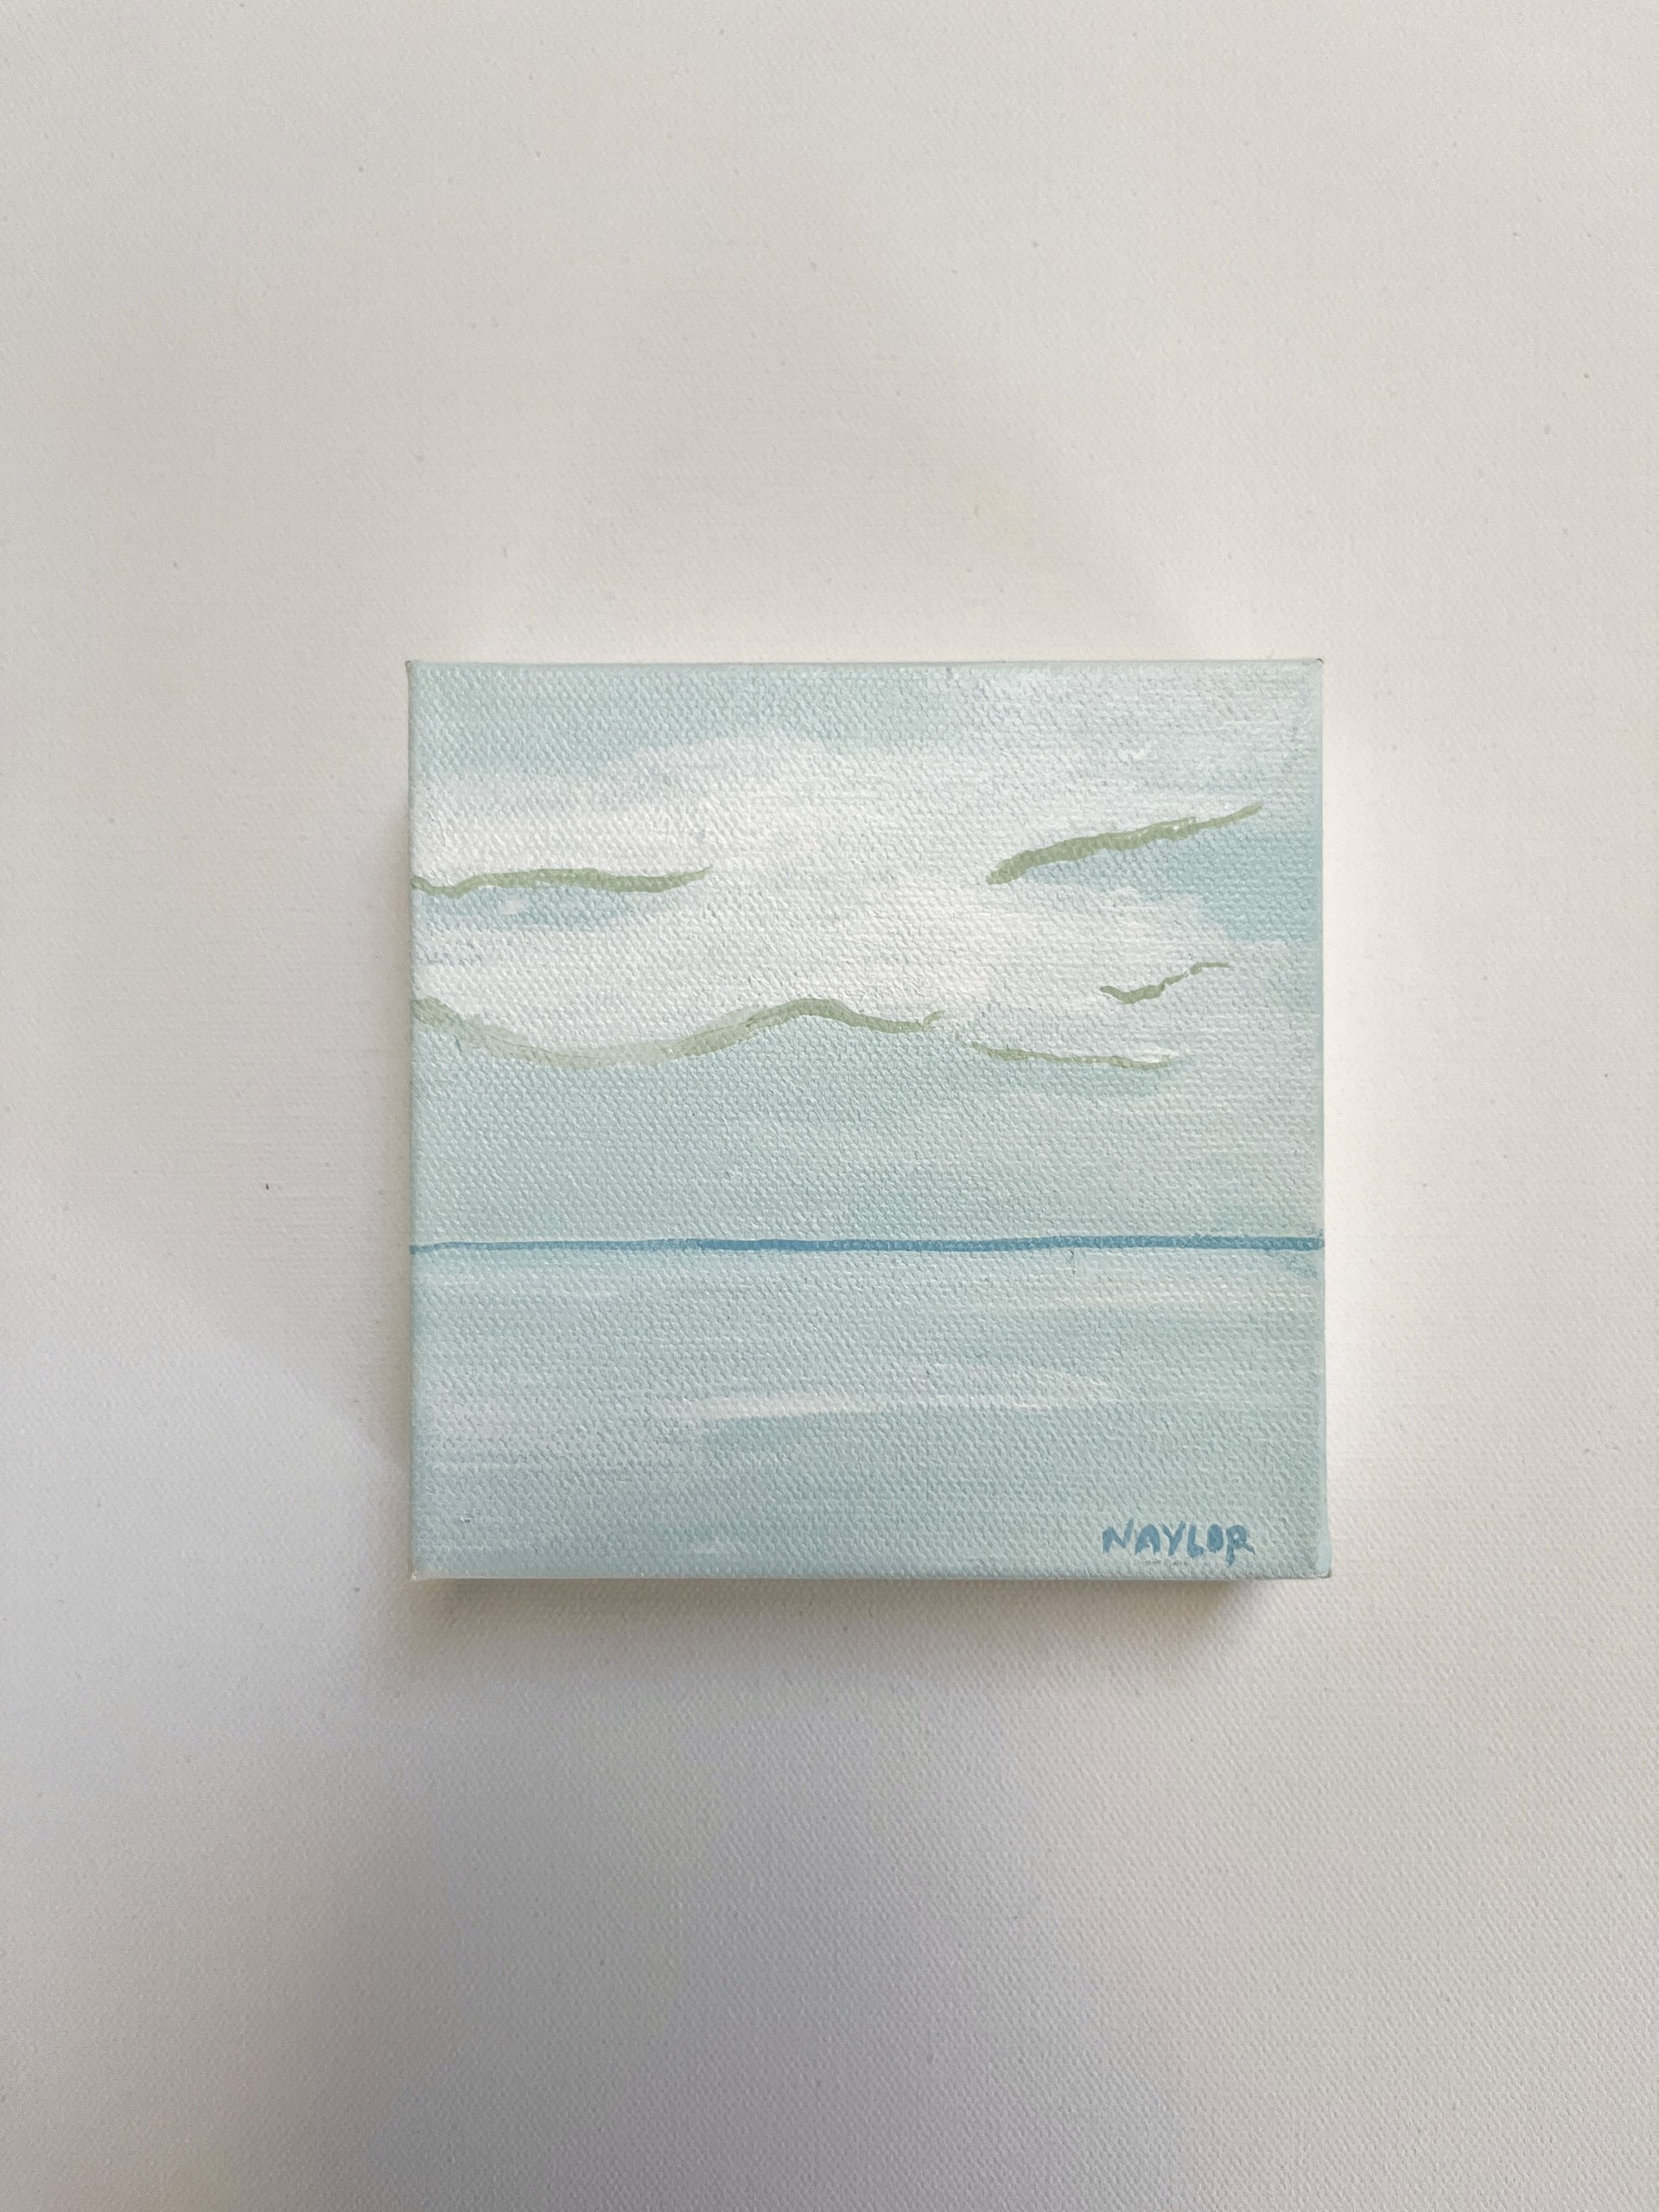 Petite Coastline 19 by Andrea Naylor